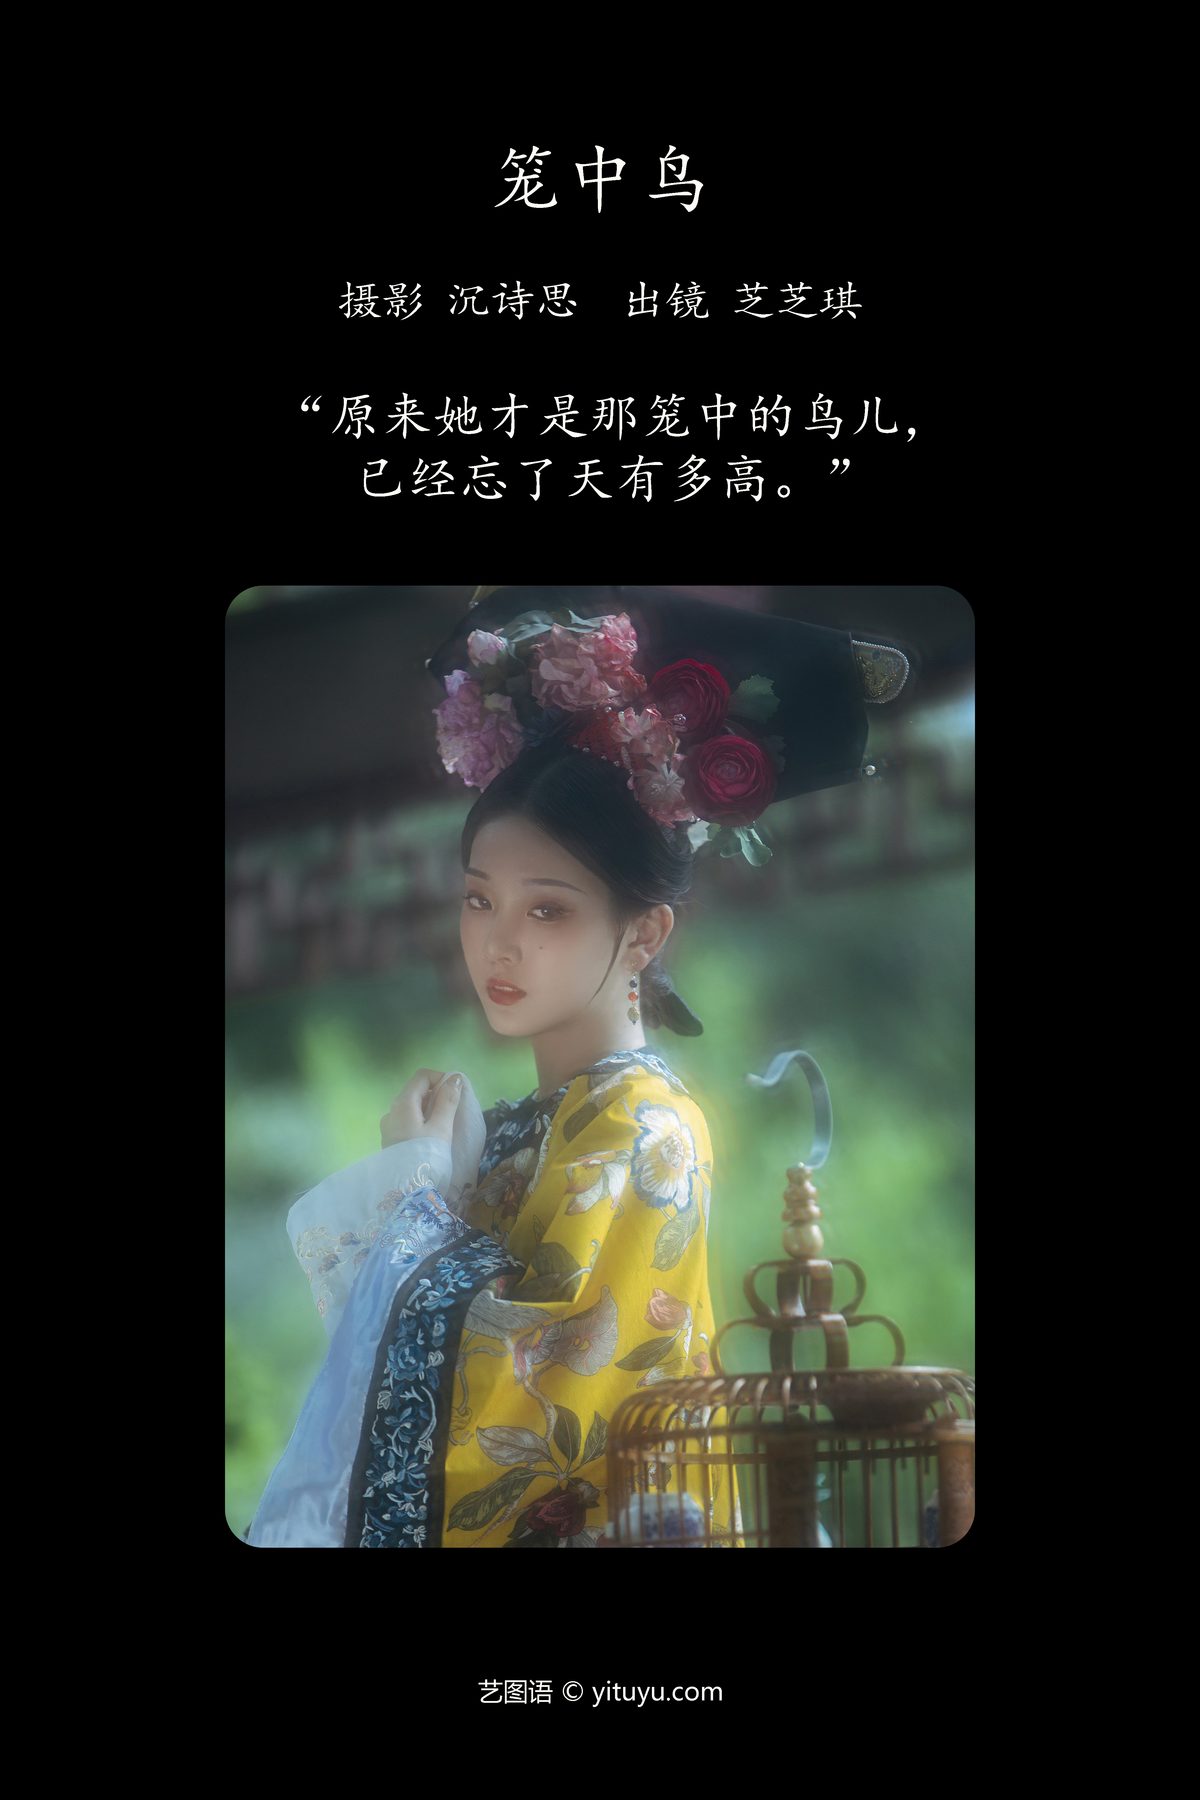 YiTuYu艺图语 Vol 4858 Zhi Zhi Qi 0001 1493599953.jpg